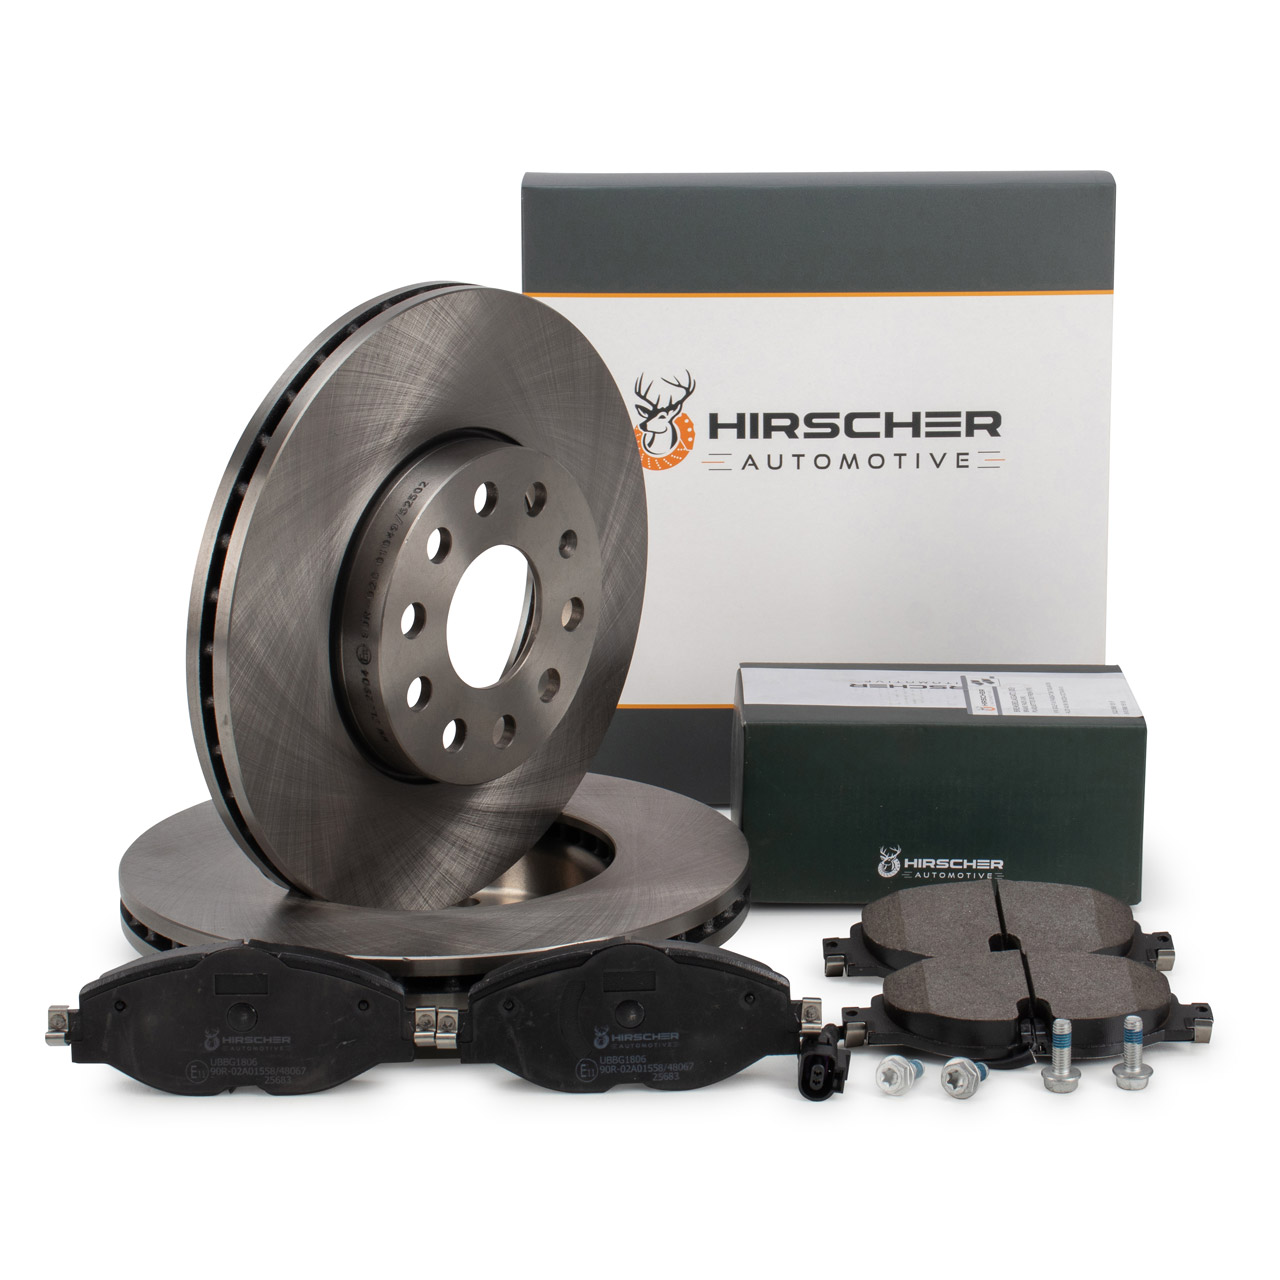 HIRSCHER Bremsen Sets - UBSM1804, UBBG1806 